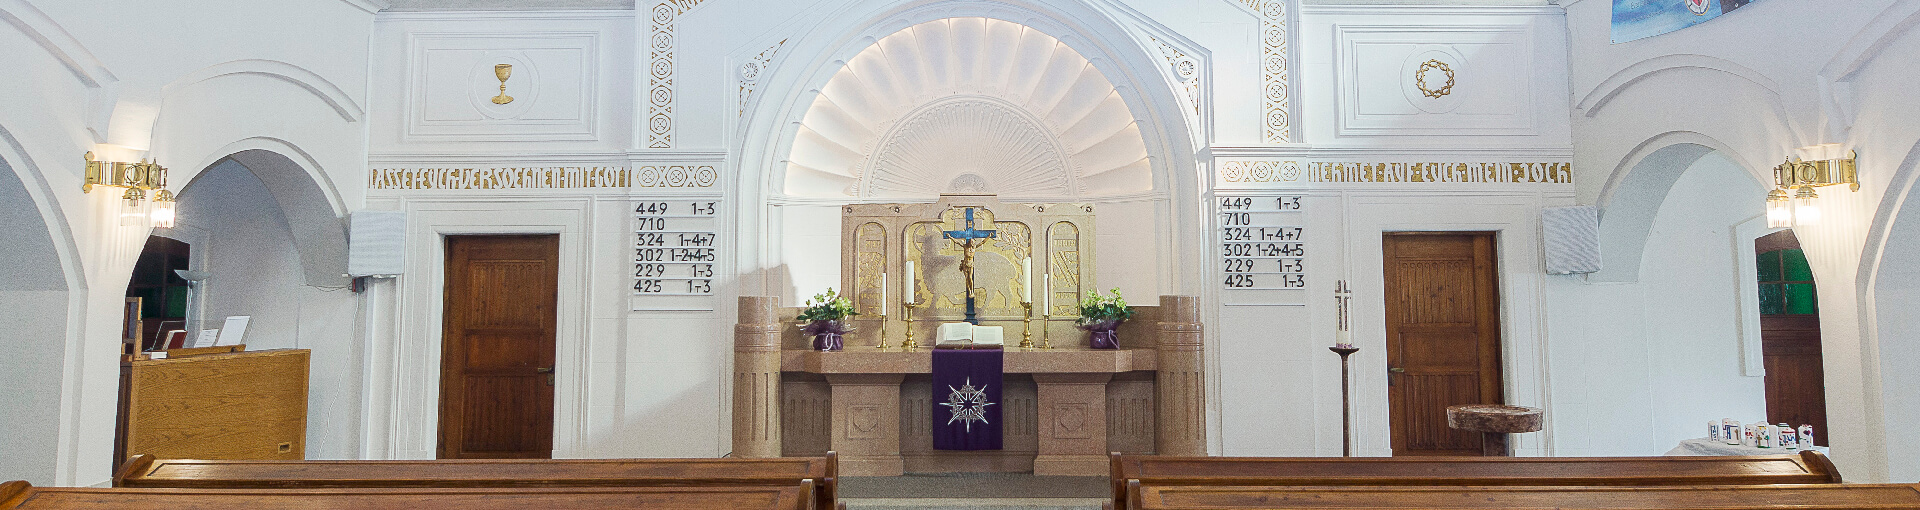 Altar in der Evangelischen Kirche Leoben